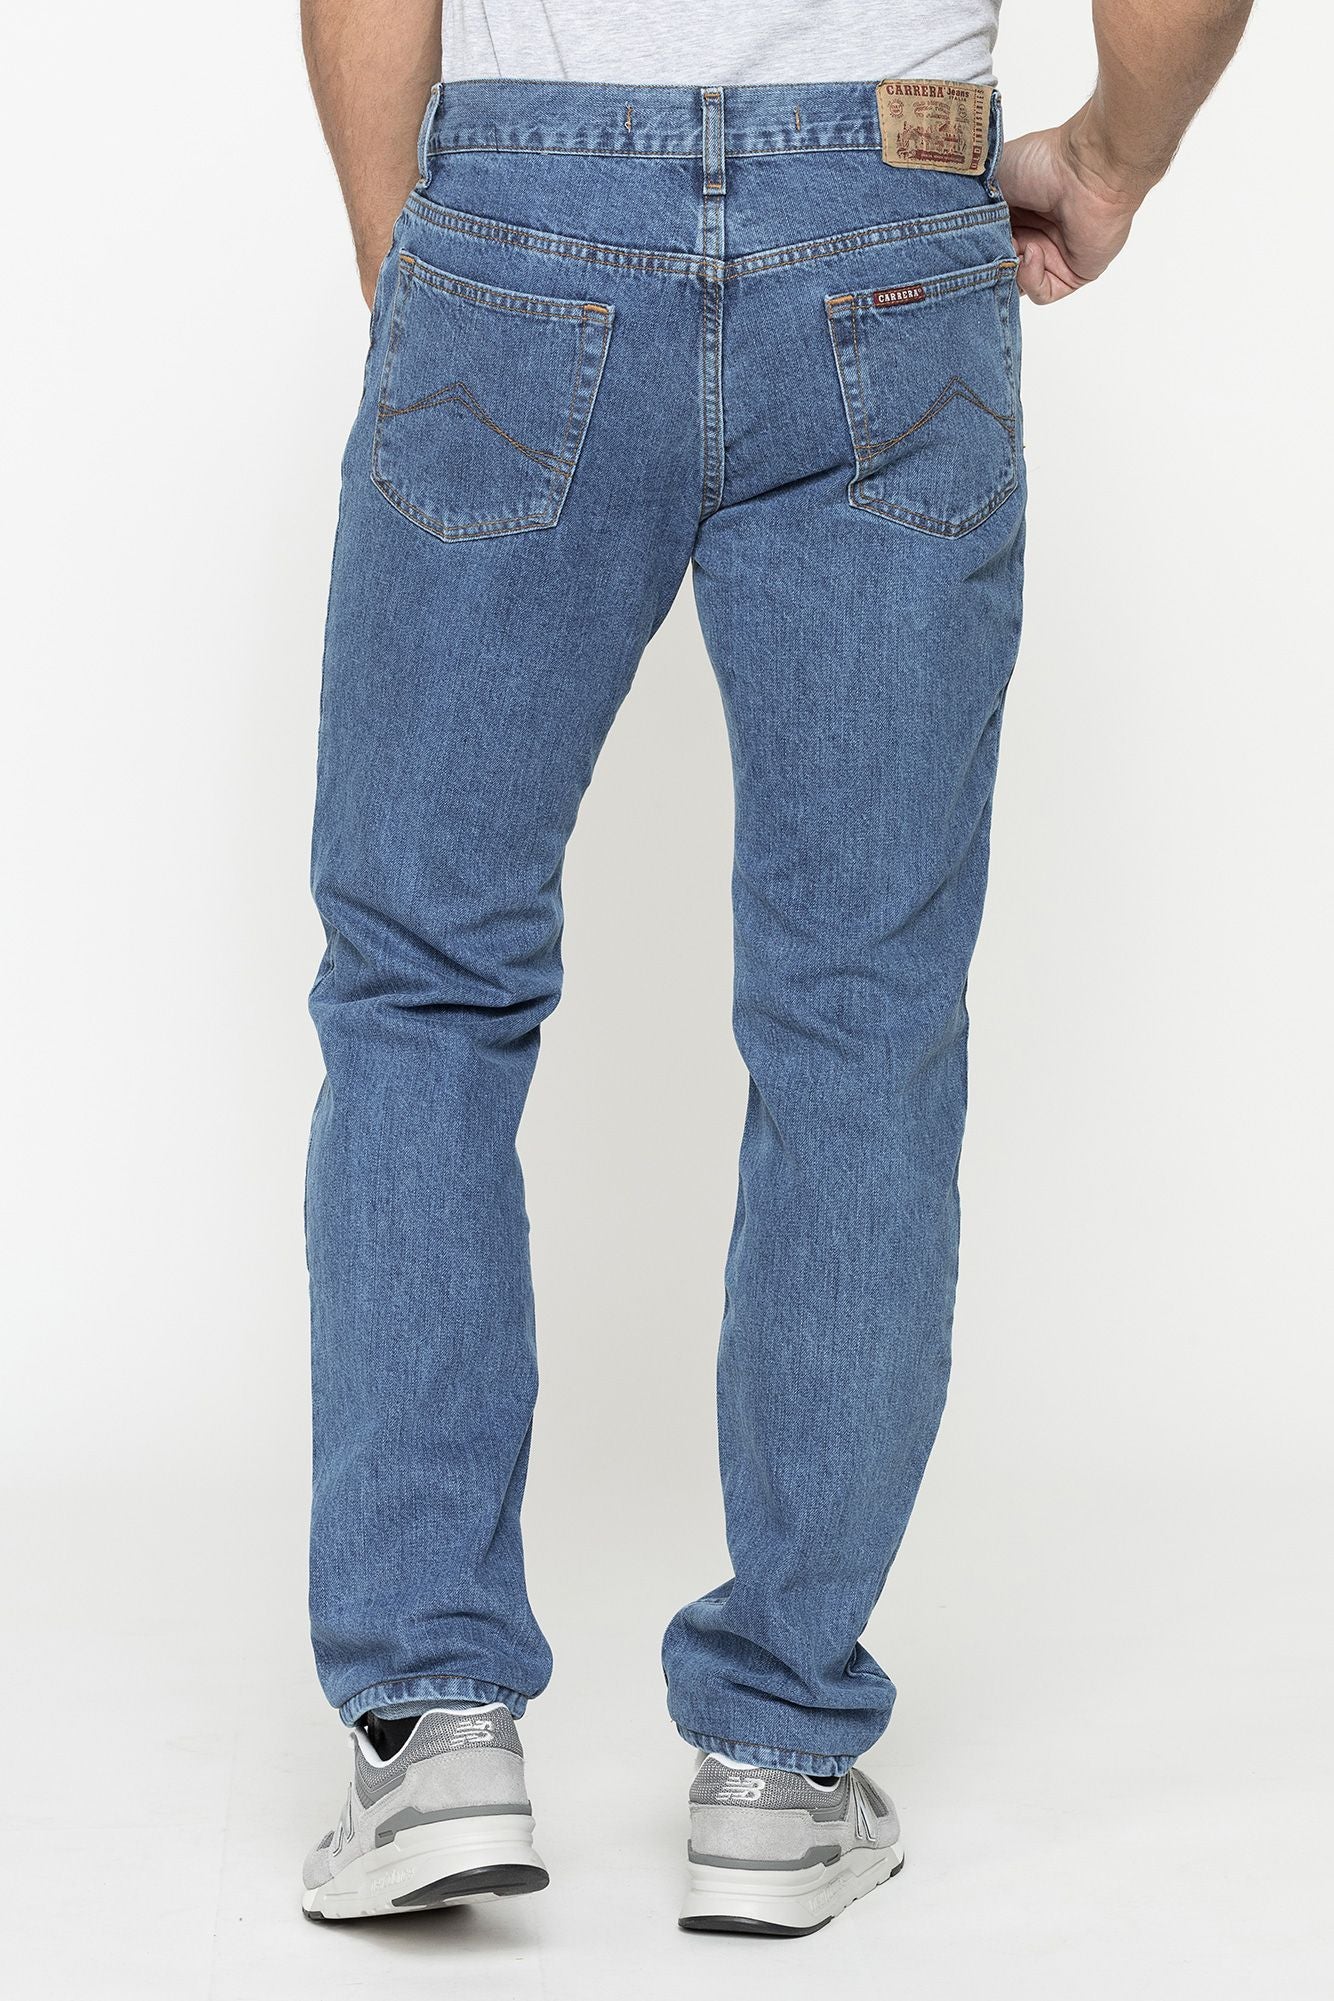 Jeans 700/1021 Carrera Colore 500 - Blocco94